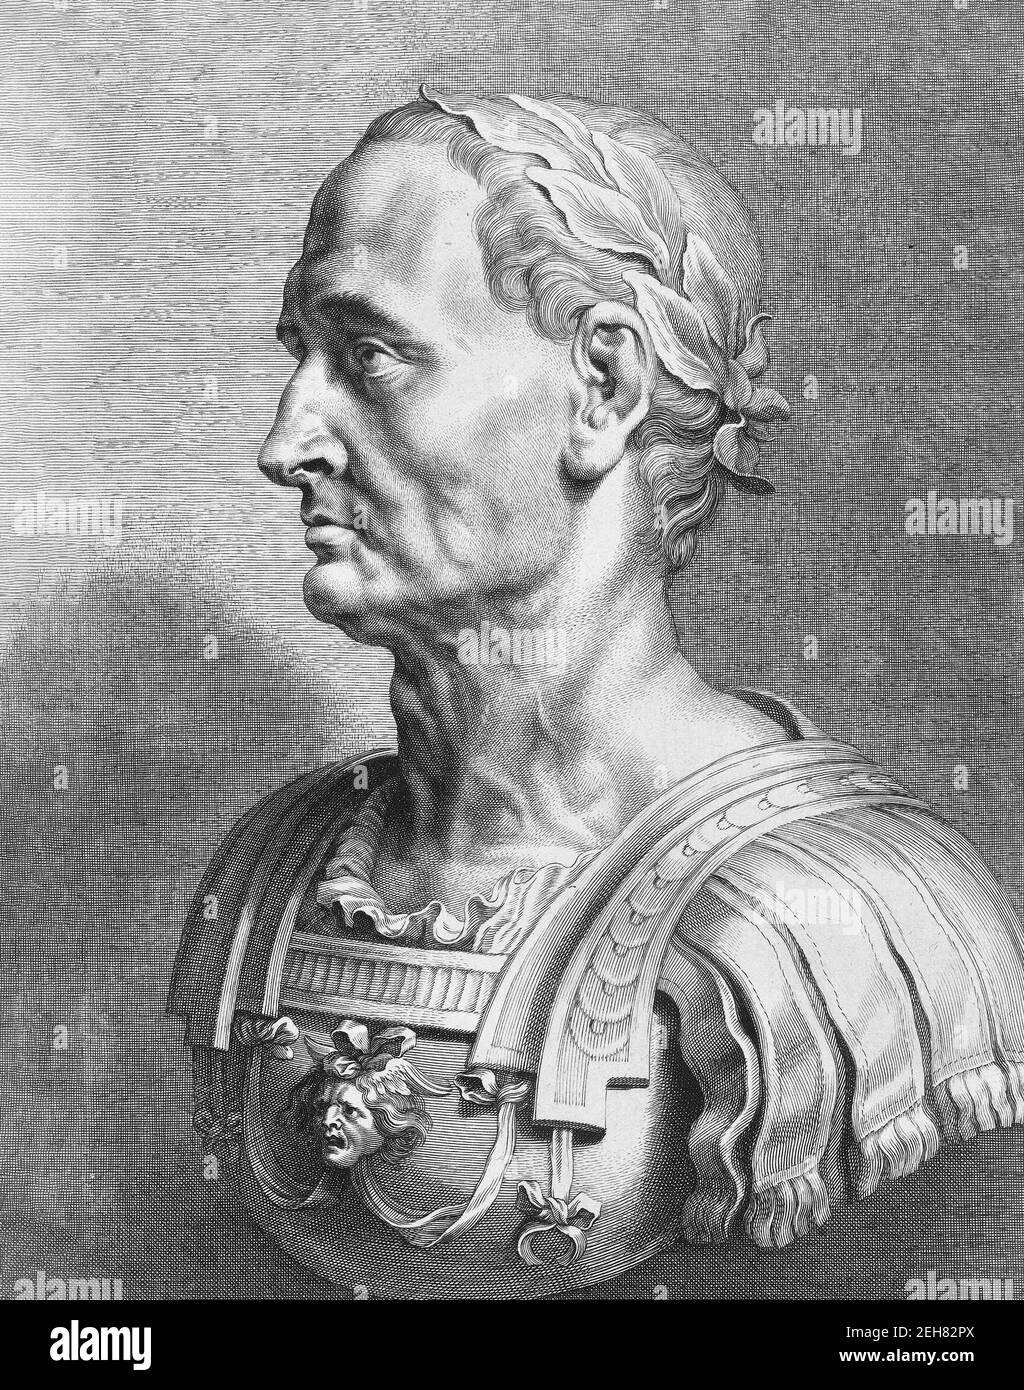 Giulio Cesare. Ritratto del dittatore romano Giulio Cesare (100 a.C. - 44 a.C.), incisione seicentesca di un busto di marmo Foto Stock